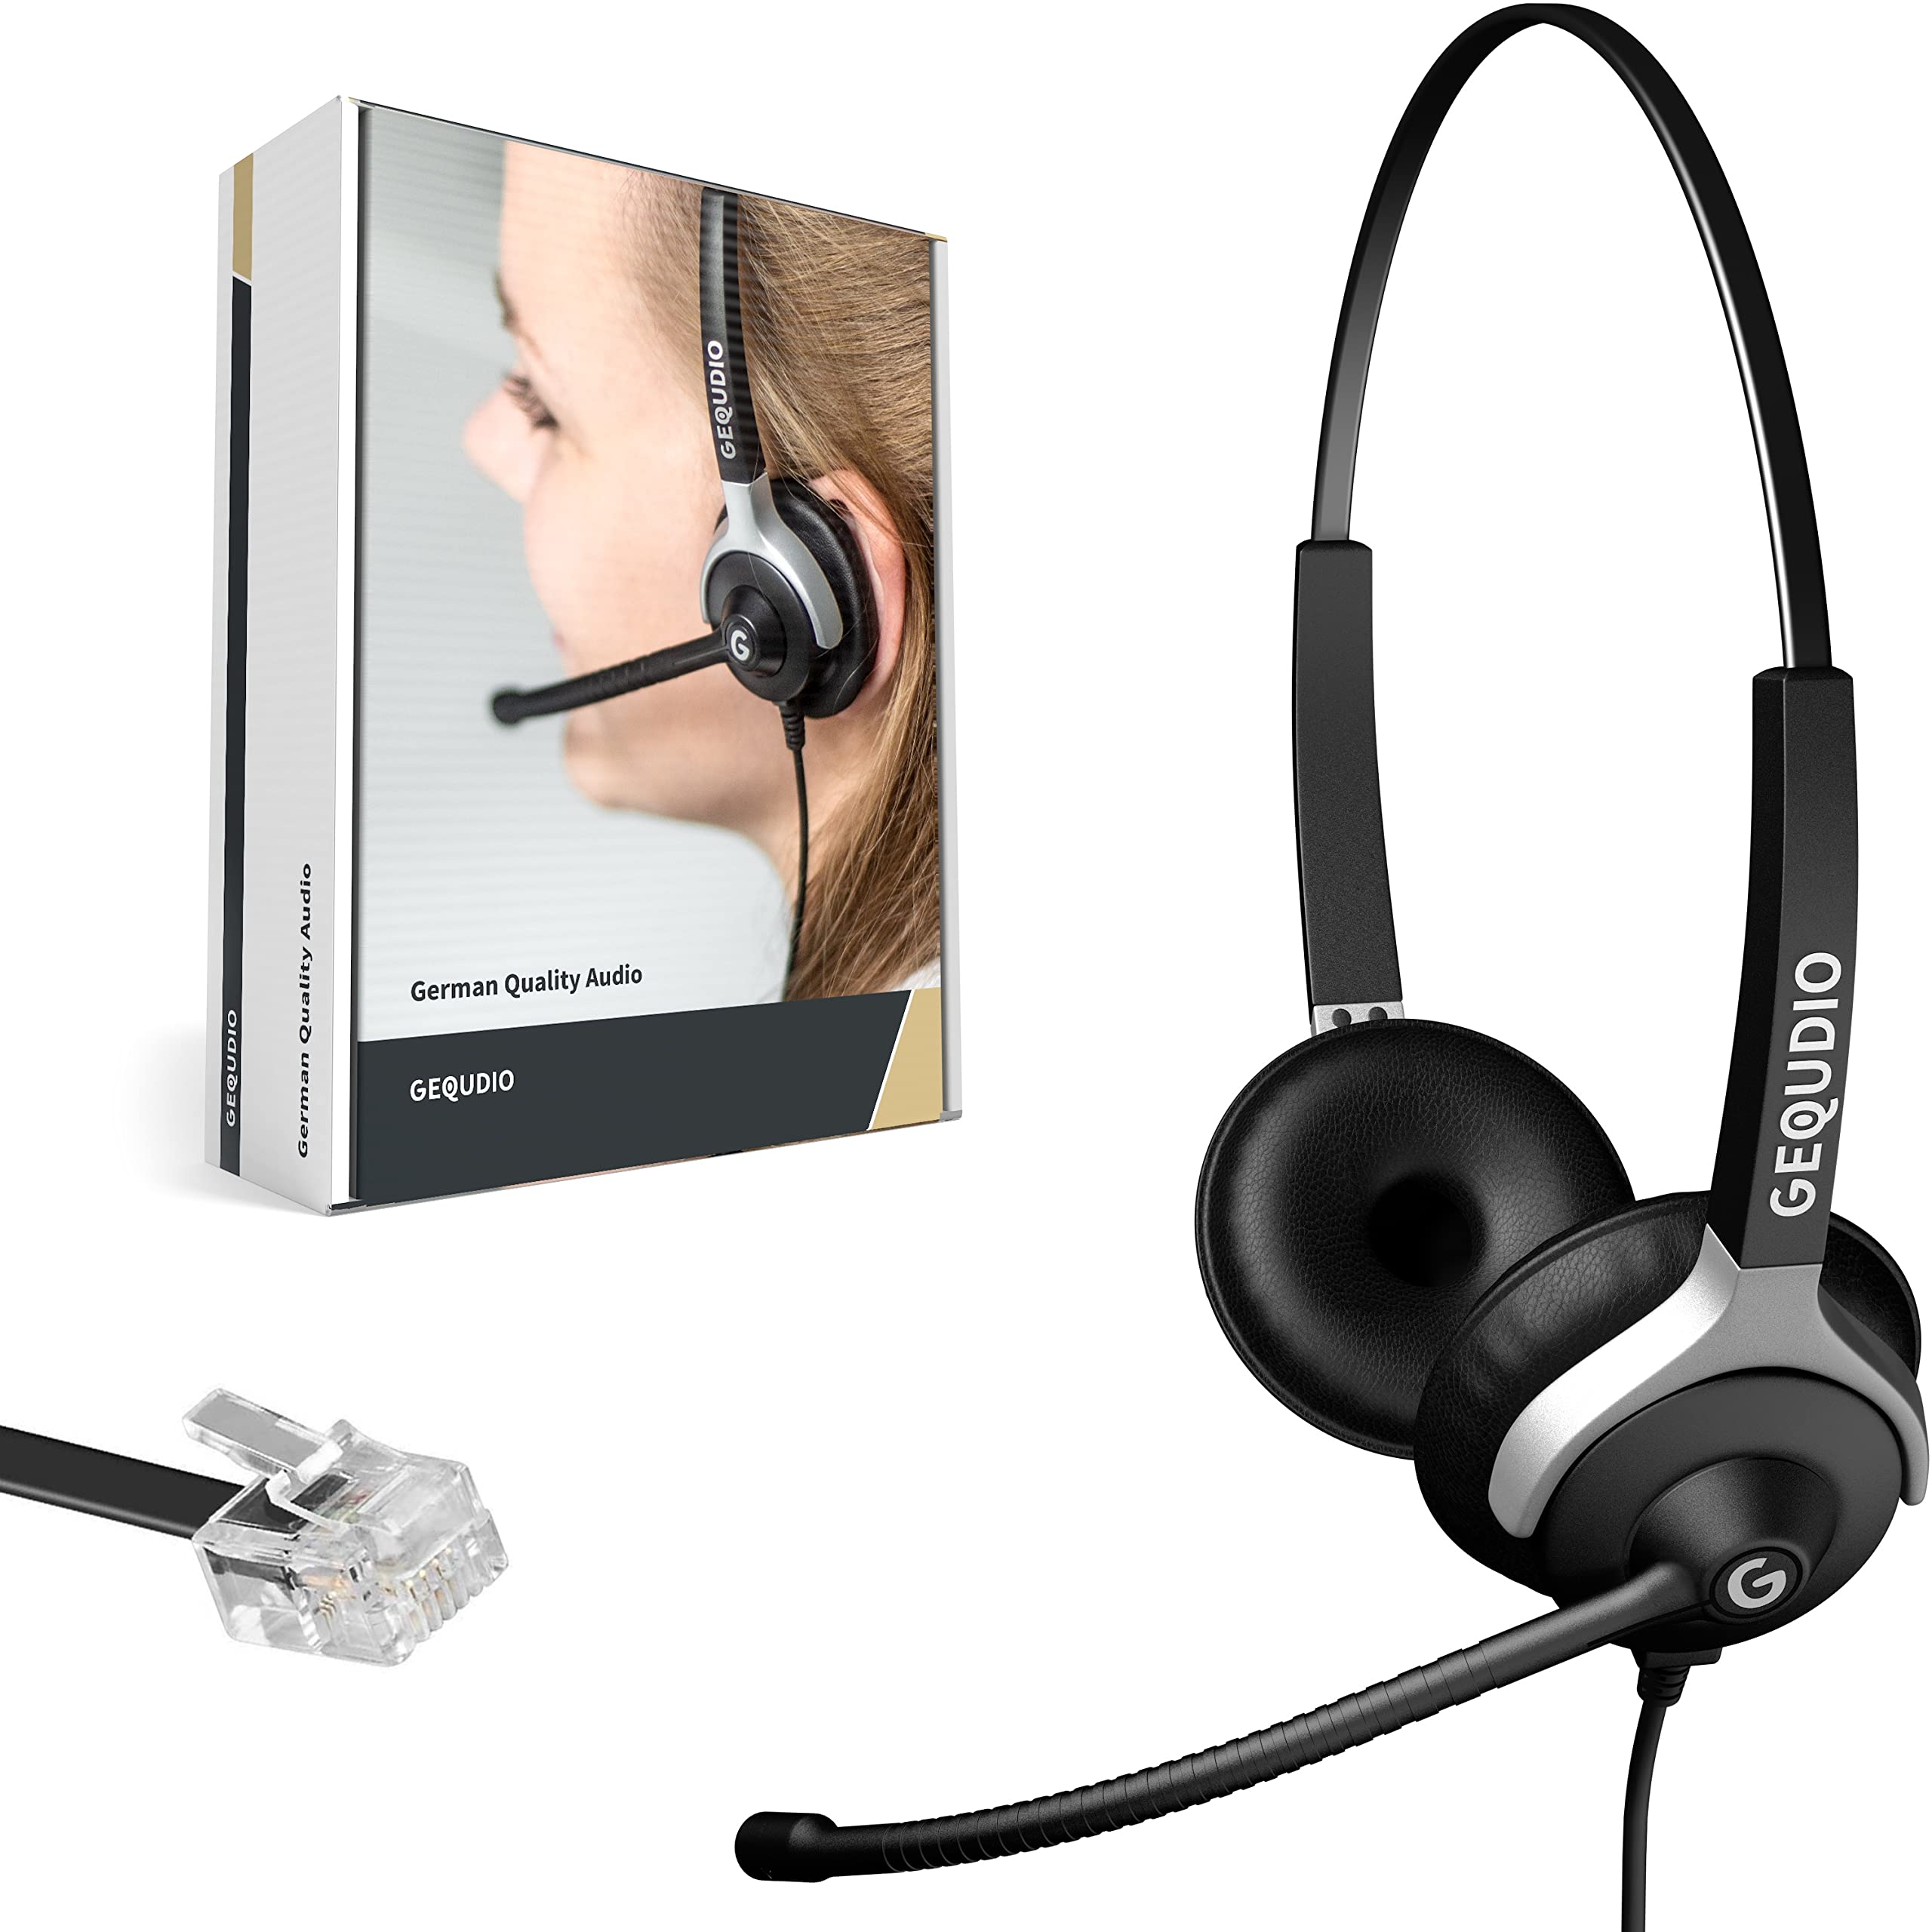 GEQUDIO Headset kompatibel mit Unify OpenStage 30 40 80 80 und OpenScape Serie Telefon - inklusive RJ Kabel - Kopfhörer & Mikrofon mit Ersatz Polster - besonders leicht 80g (2-Ohr)